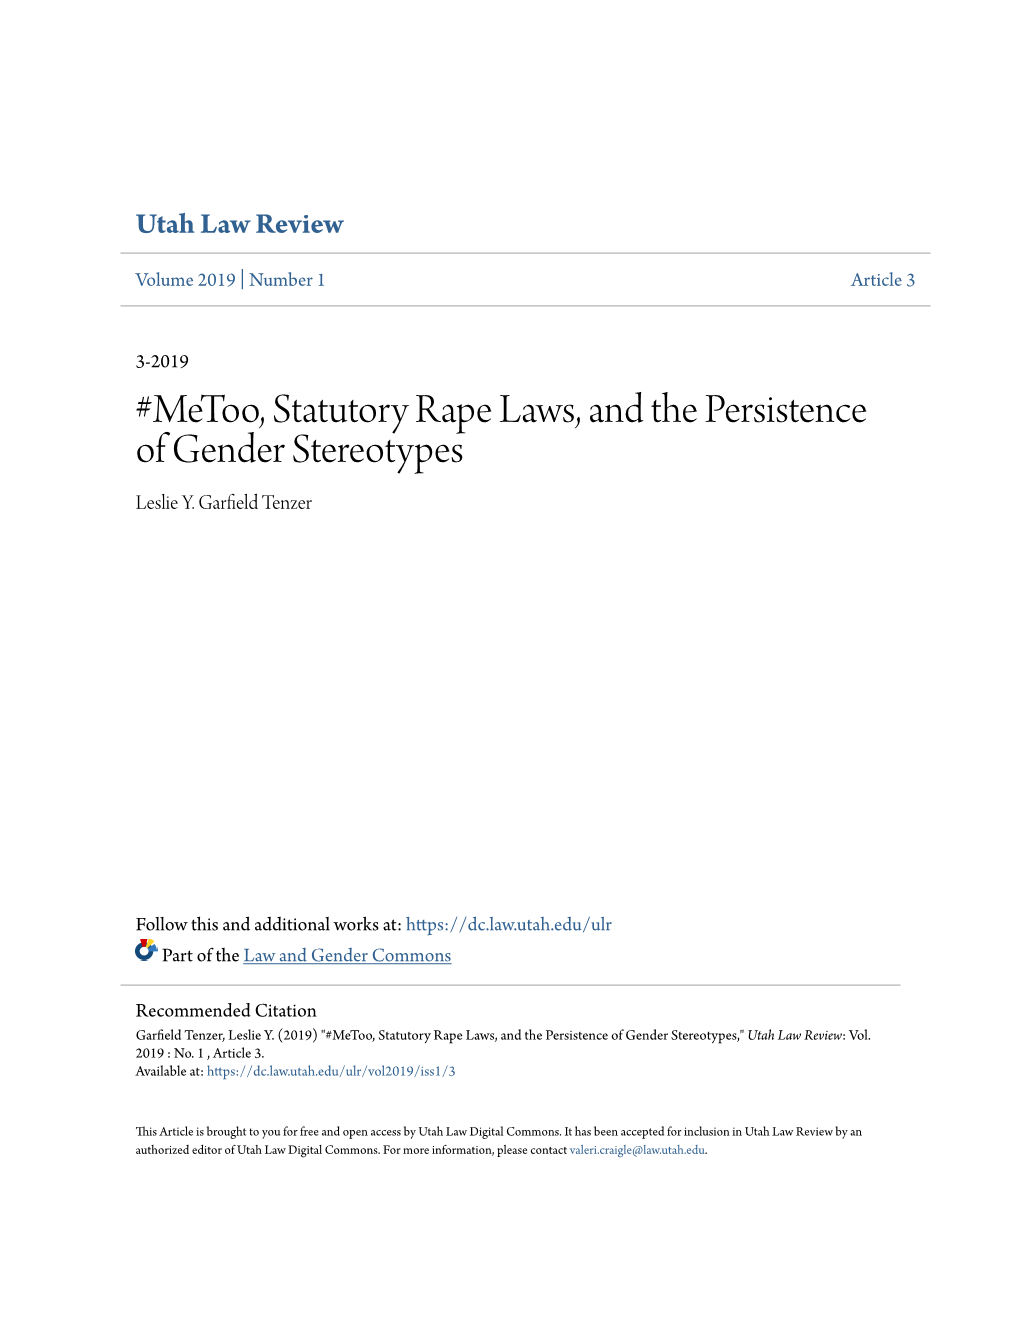 Metoo, Statutory Rape Laws, and the Persistence of Gender Stereotypes Leslie Y